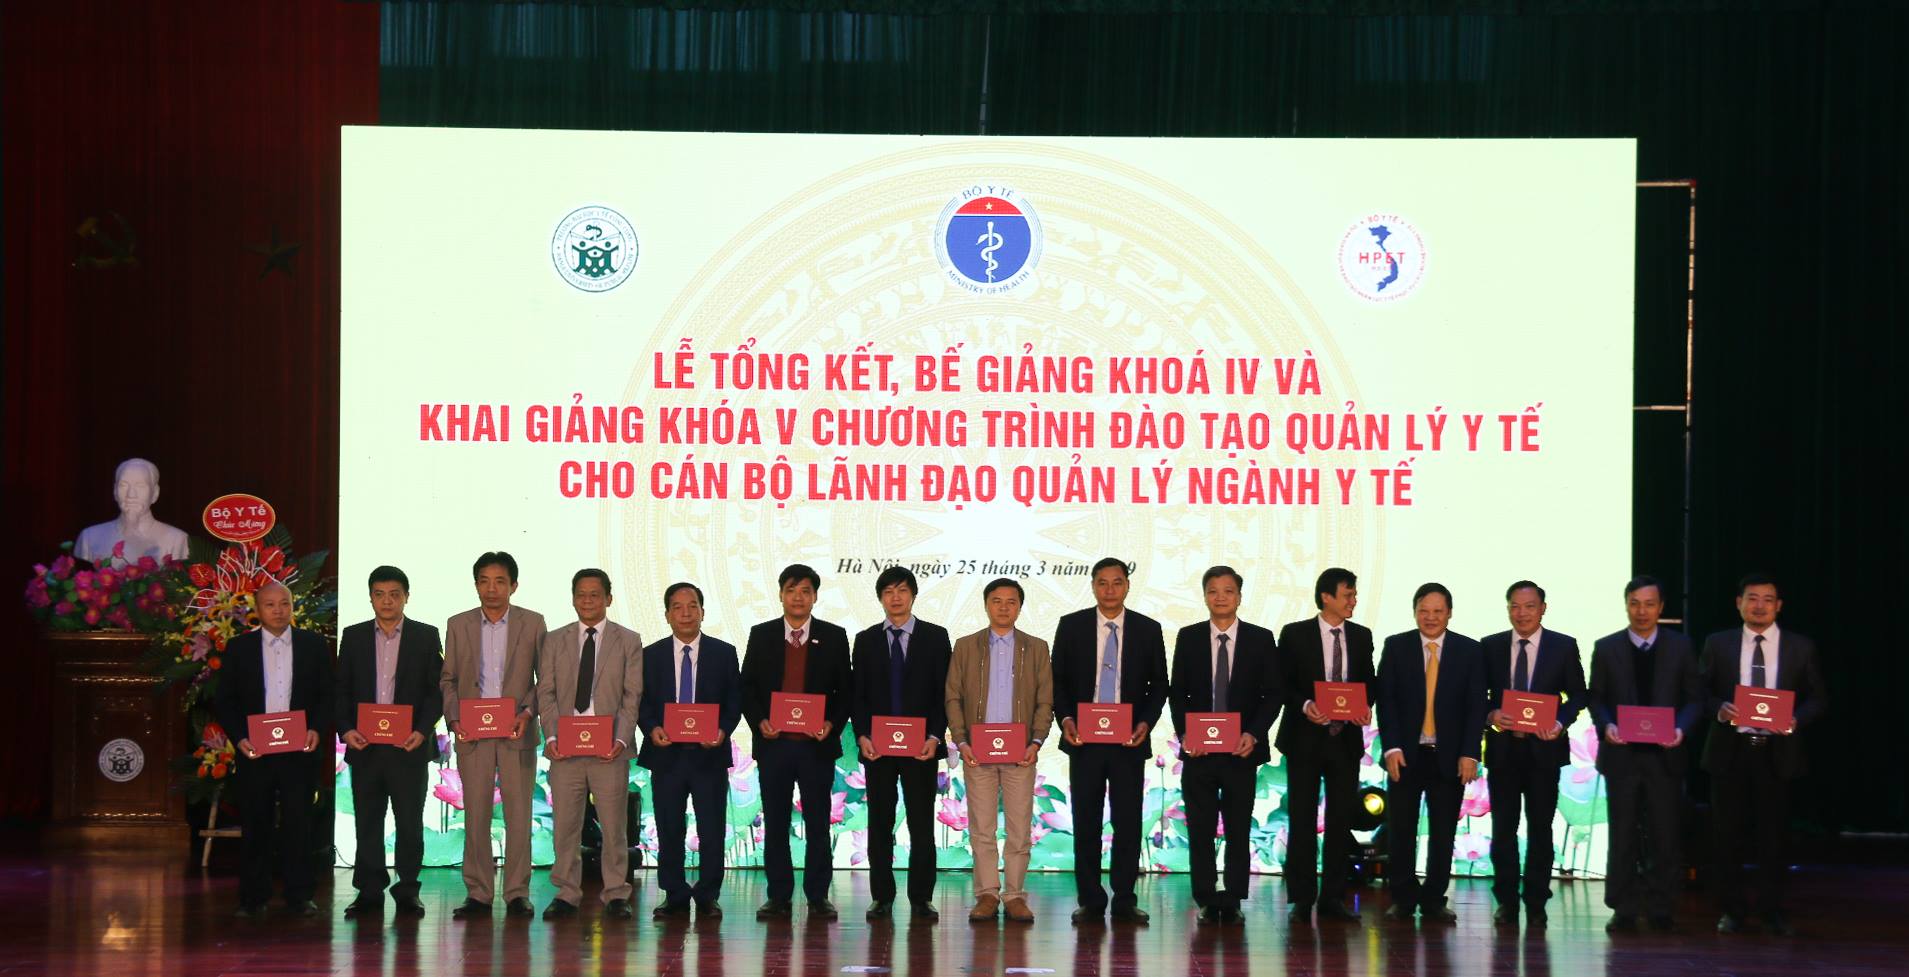 Ảnh: GS.TS Nguyễn Viết Tiến, Thứ trưởng Bộ Y tế trao chứng chỉ cho các học viên khóa IV lớp Bệnh viện